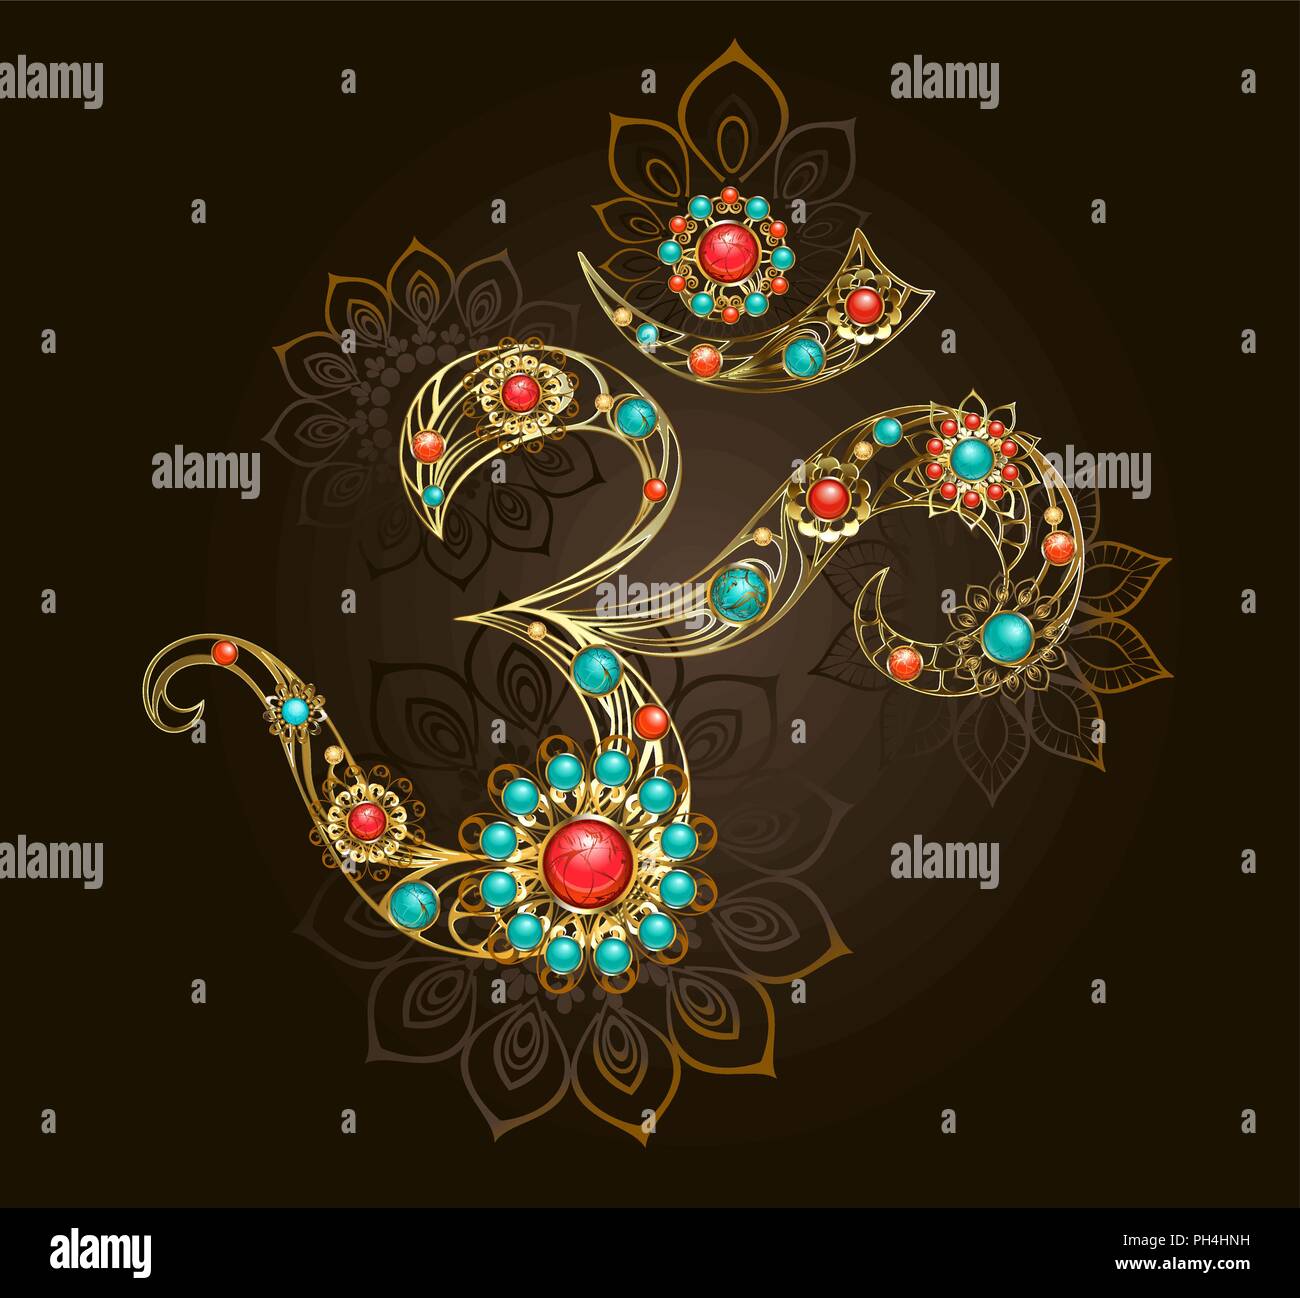 Golden Om simbolo adornati con fiori preziosi con corniola e turchese su sfondo marrone. Illustrazione Vettoriale